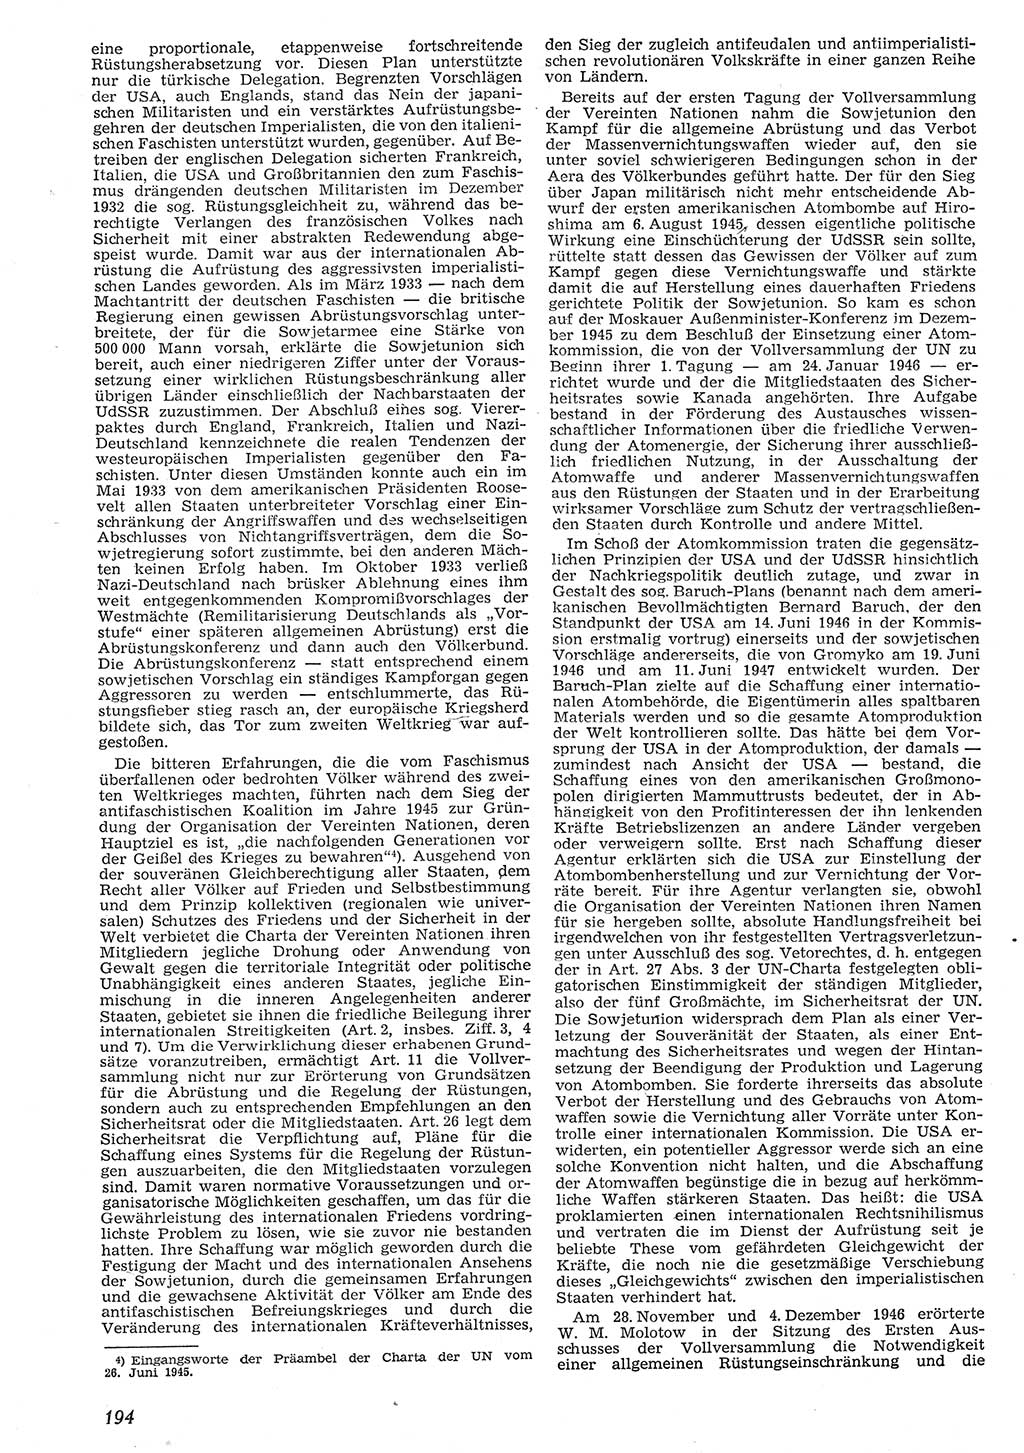 Neue Justiz (NJ), Zeitschrift für Recht und Rechtswissenschaft [Deutsche Demokratische Republik (DDR)], 10. Jahrgang 1956, Seite 194 (NJ DDR 1956, S. 194)